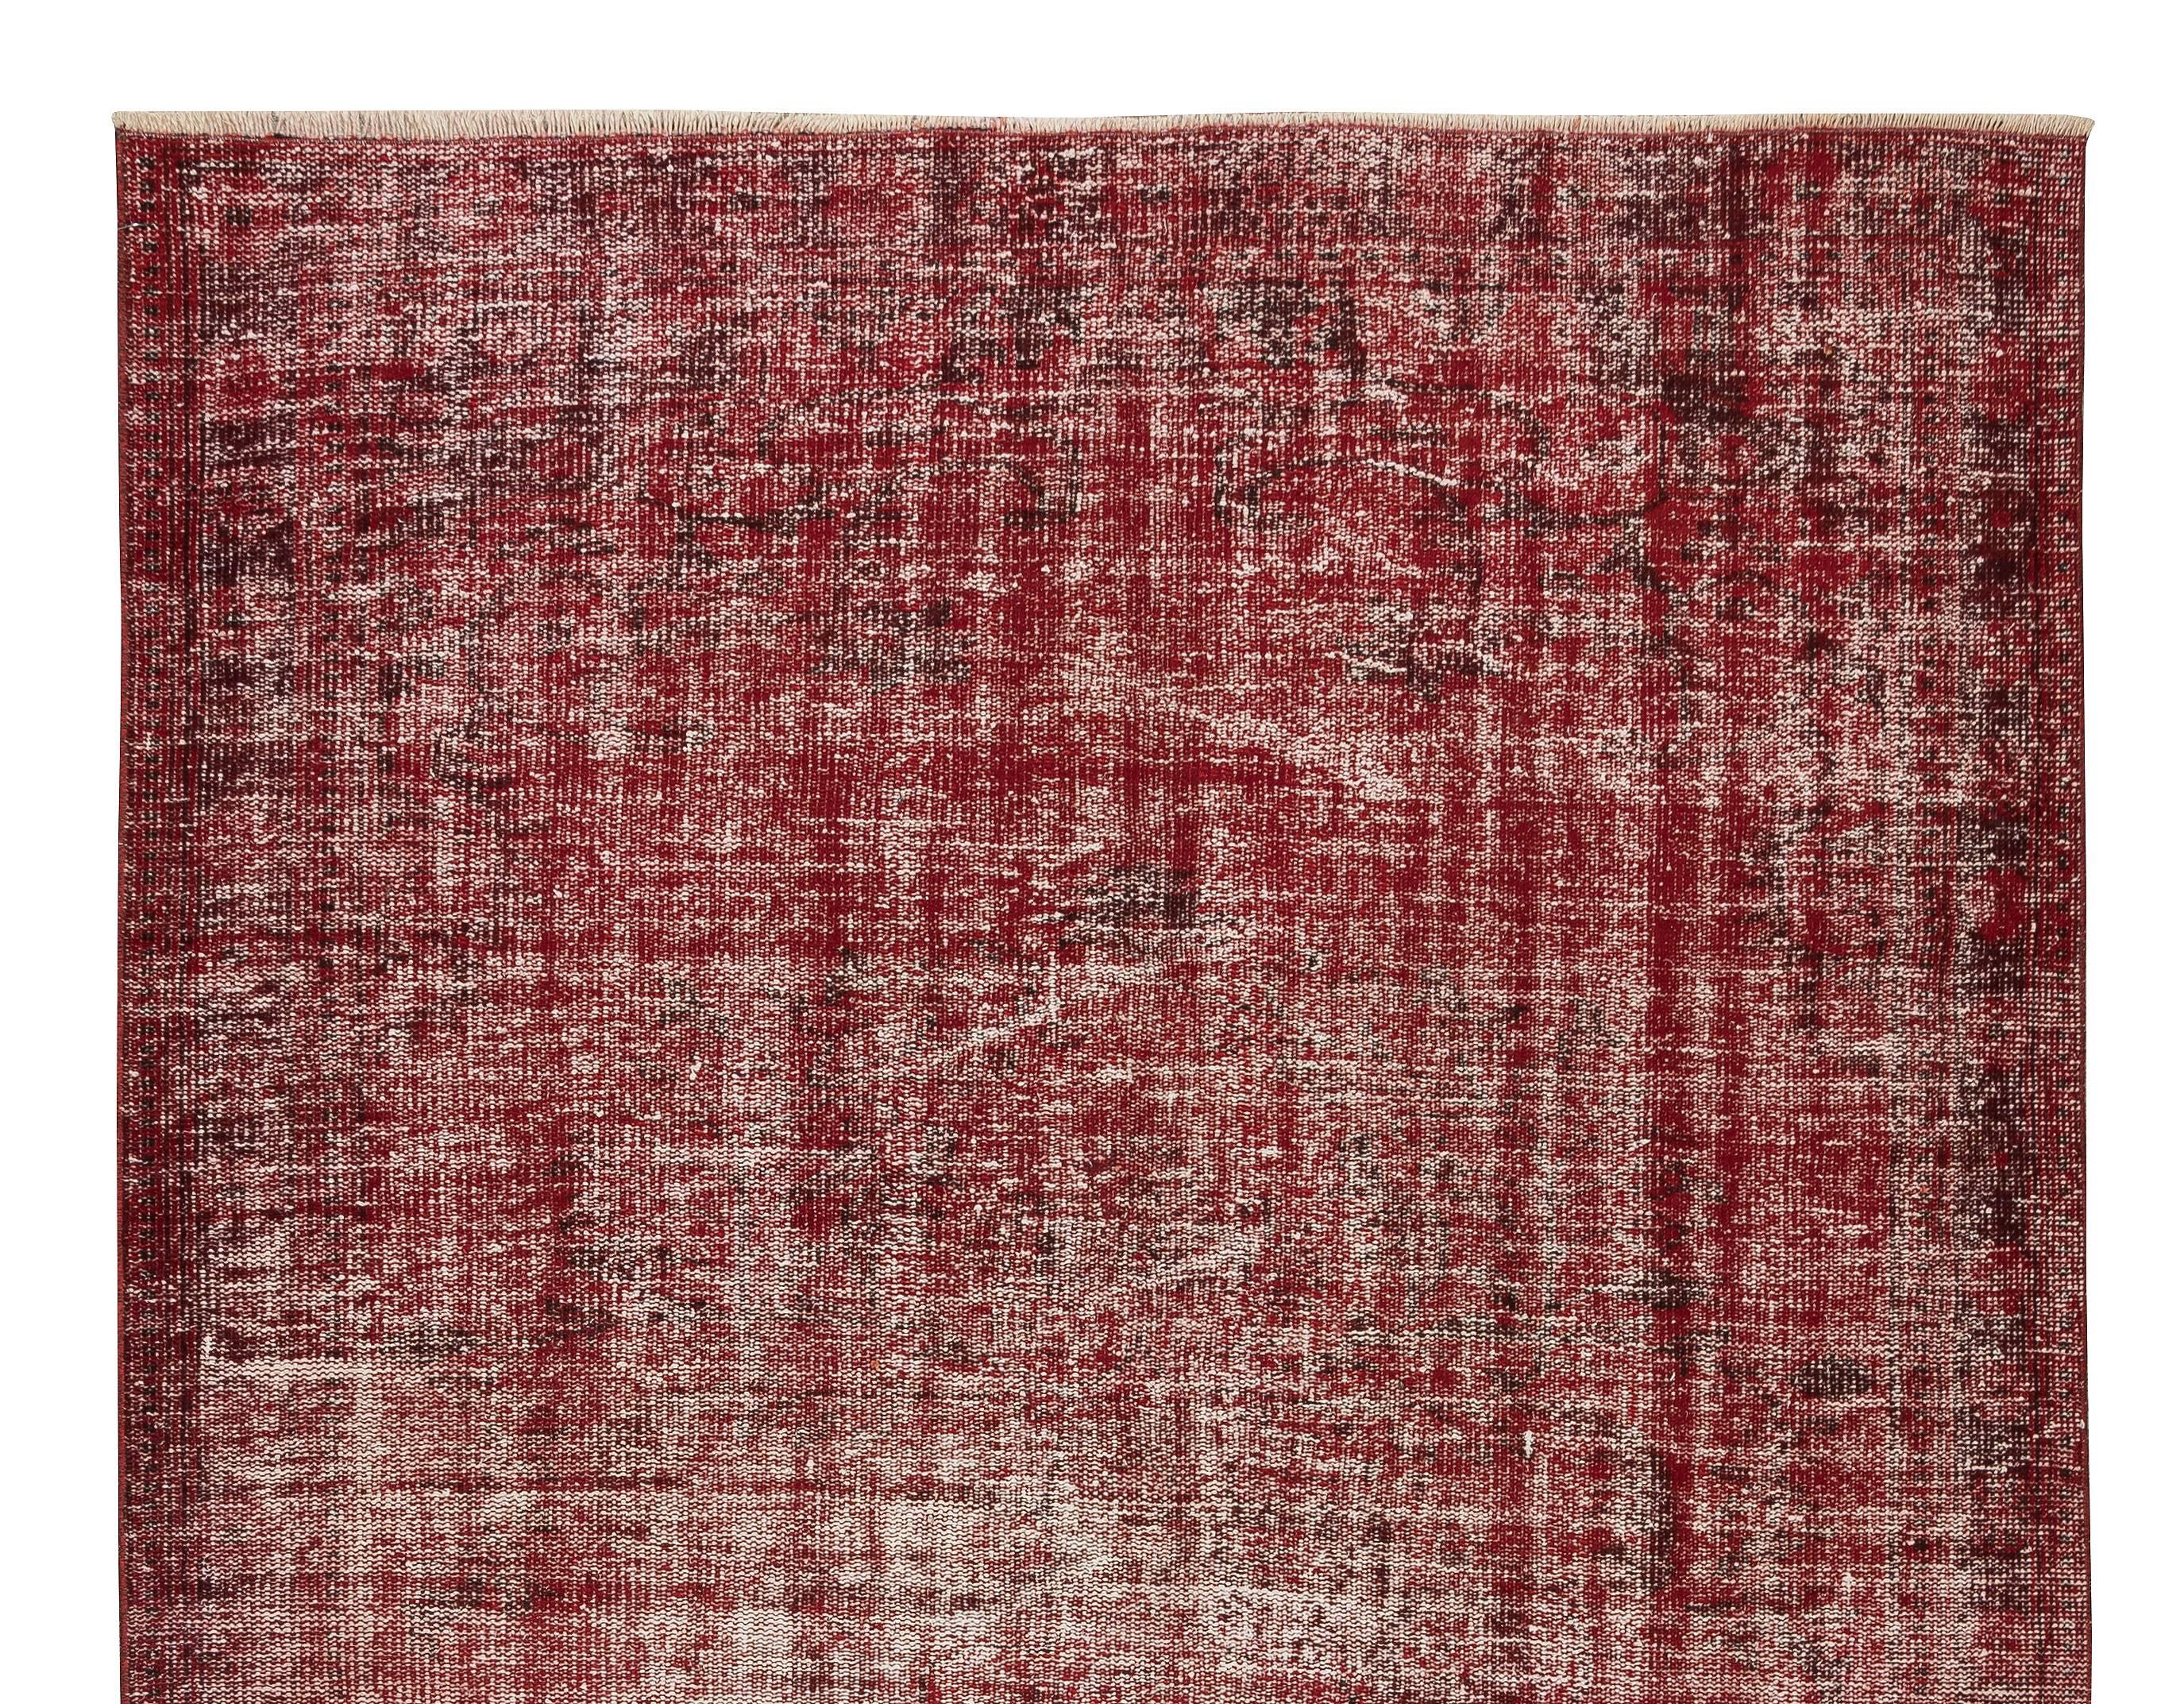 Türkischer Burgunderroter 6x9.4 Ft Teppich. Shabby Chic Bodenbelag. Handgefertigter Teppich (Handgeknüpft) im Angebot